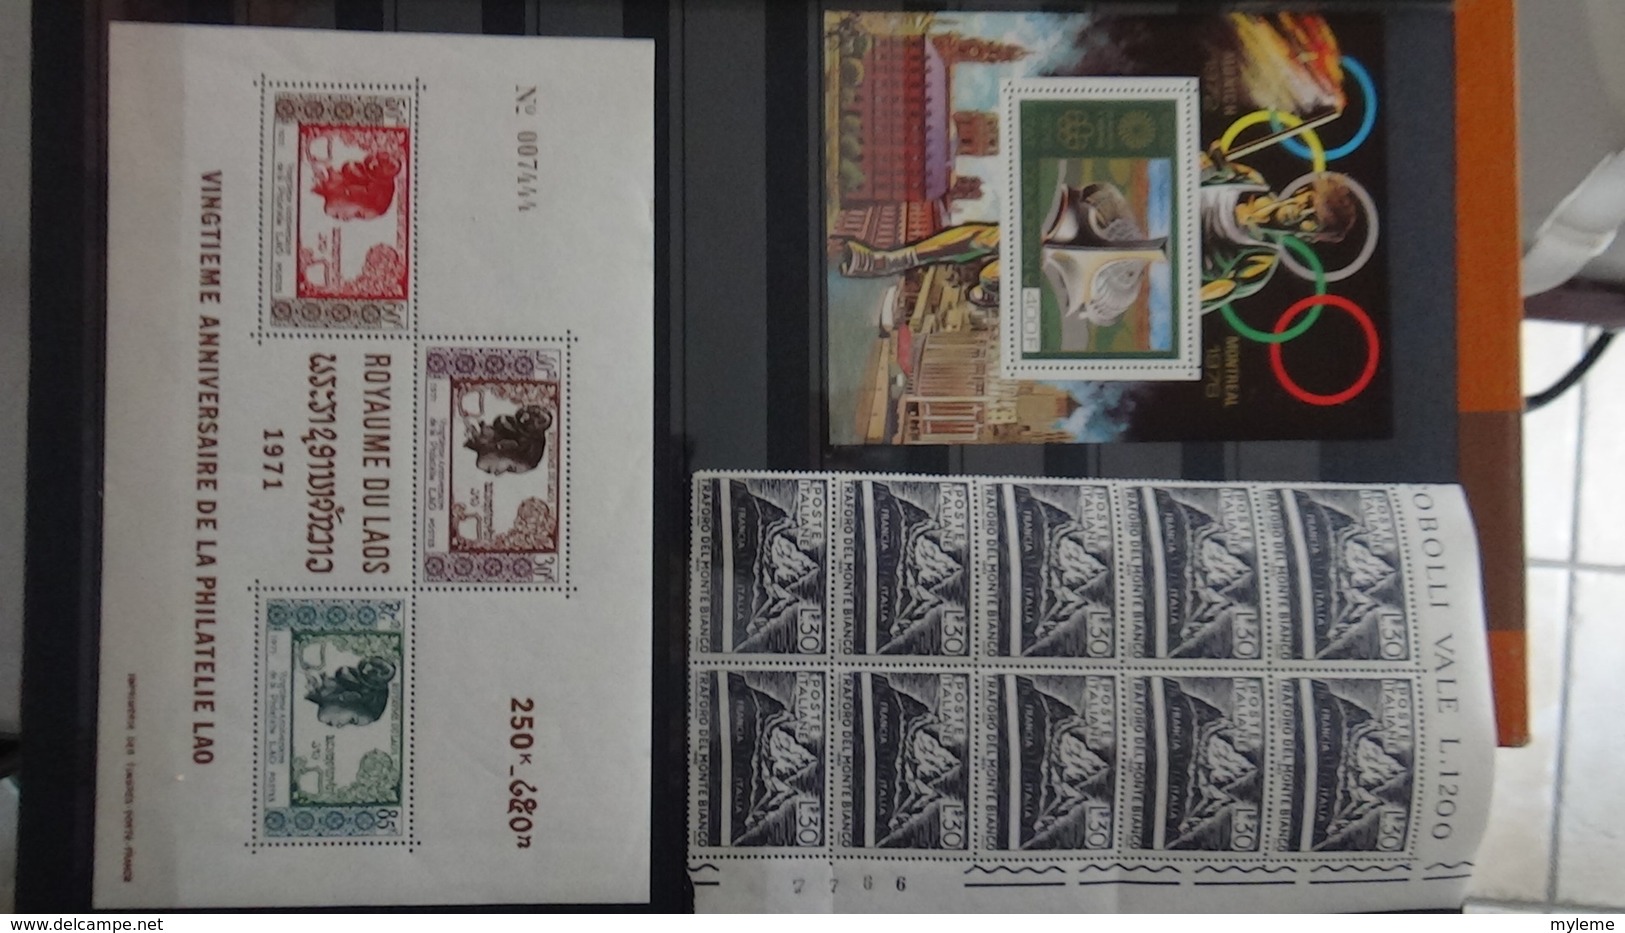 D88 Collection Blocs, carnets et timbres ** de différents pays dont beaucoup de Tunise**  A saisir !!!